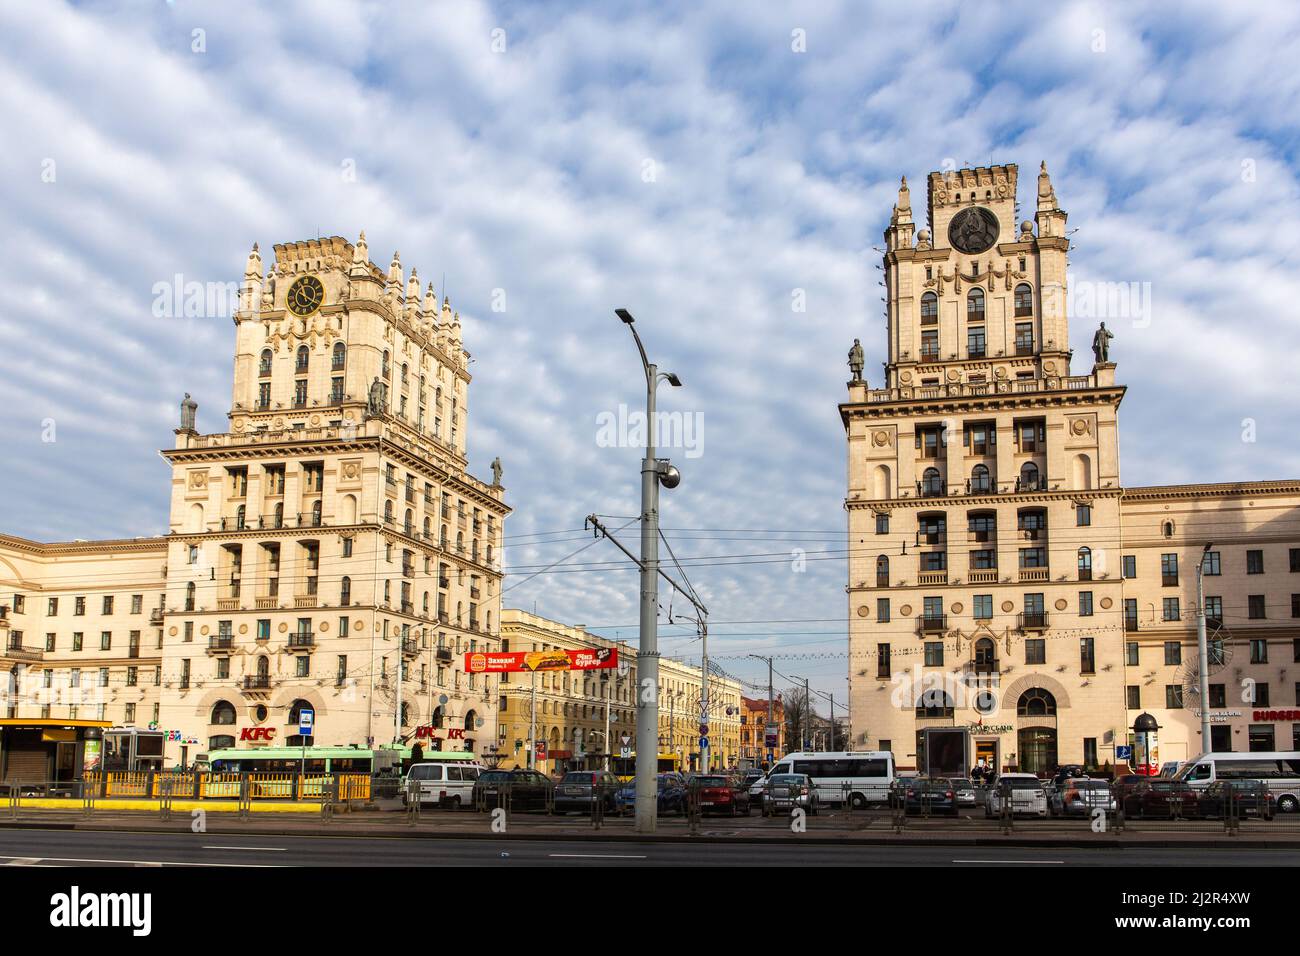 Minsk, Bielorussia, 04.11.21. Le porte di Minsk, due torri monumentali in stile classicismo socialista all'ingresso della città. Foto Stock